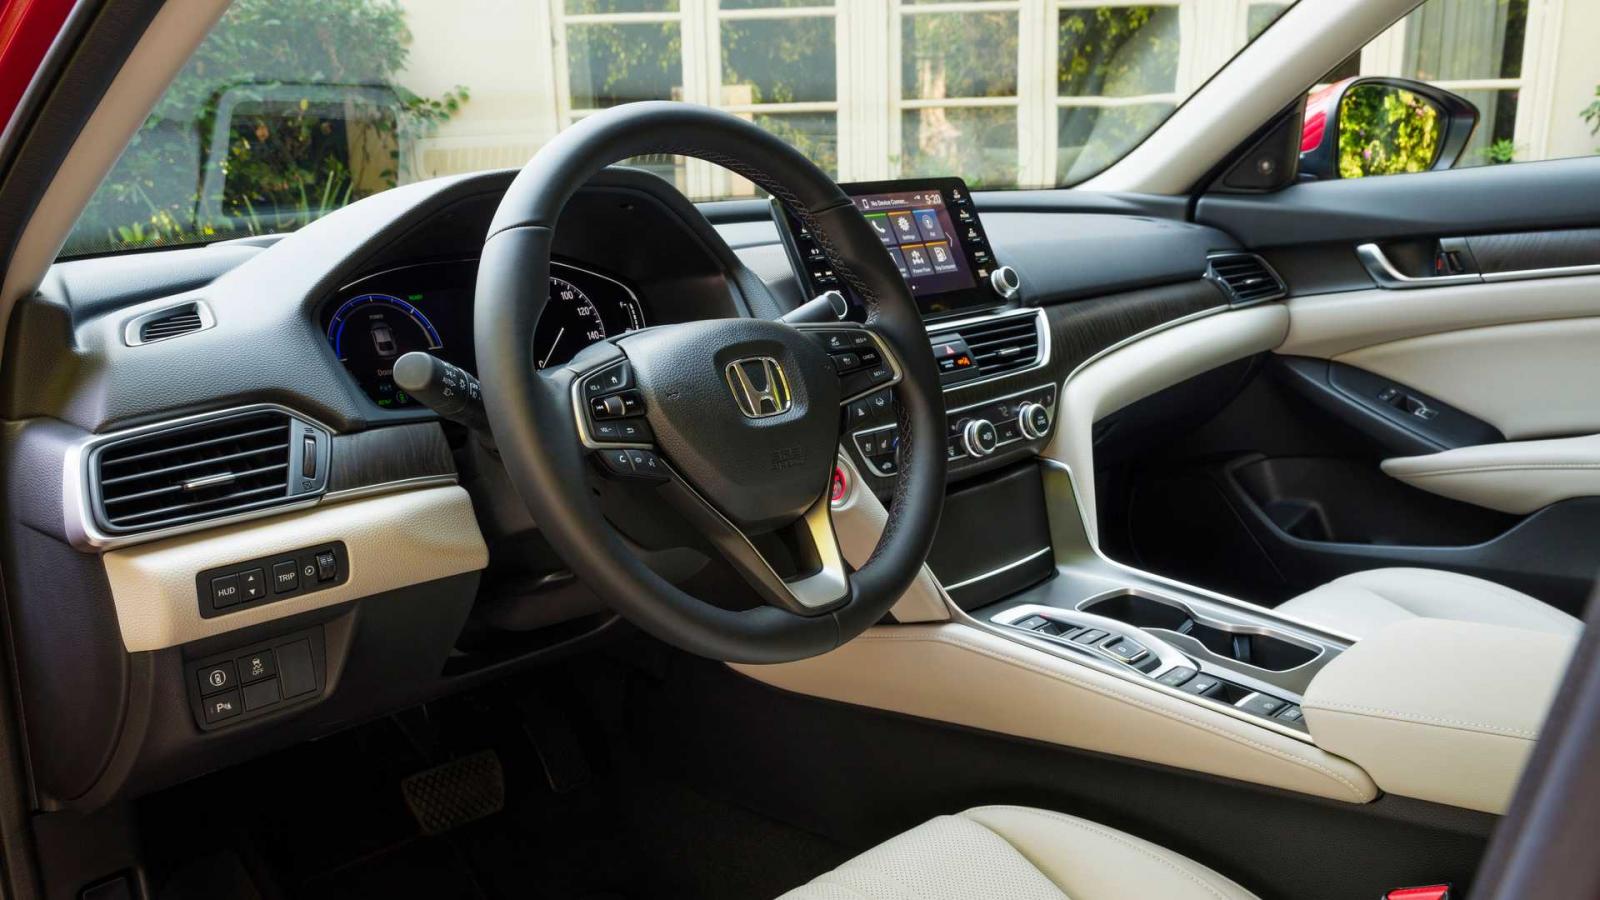 Honda Accord 2021 tinh chỉnh các tinh năng tiện nghi phục vụ tốt hơn.